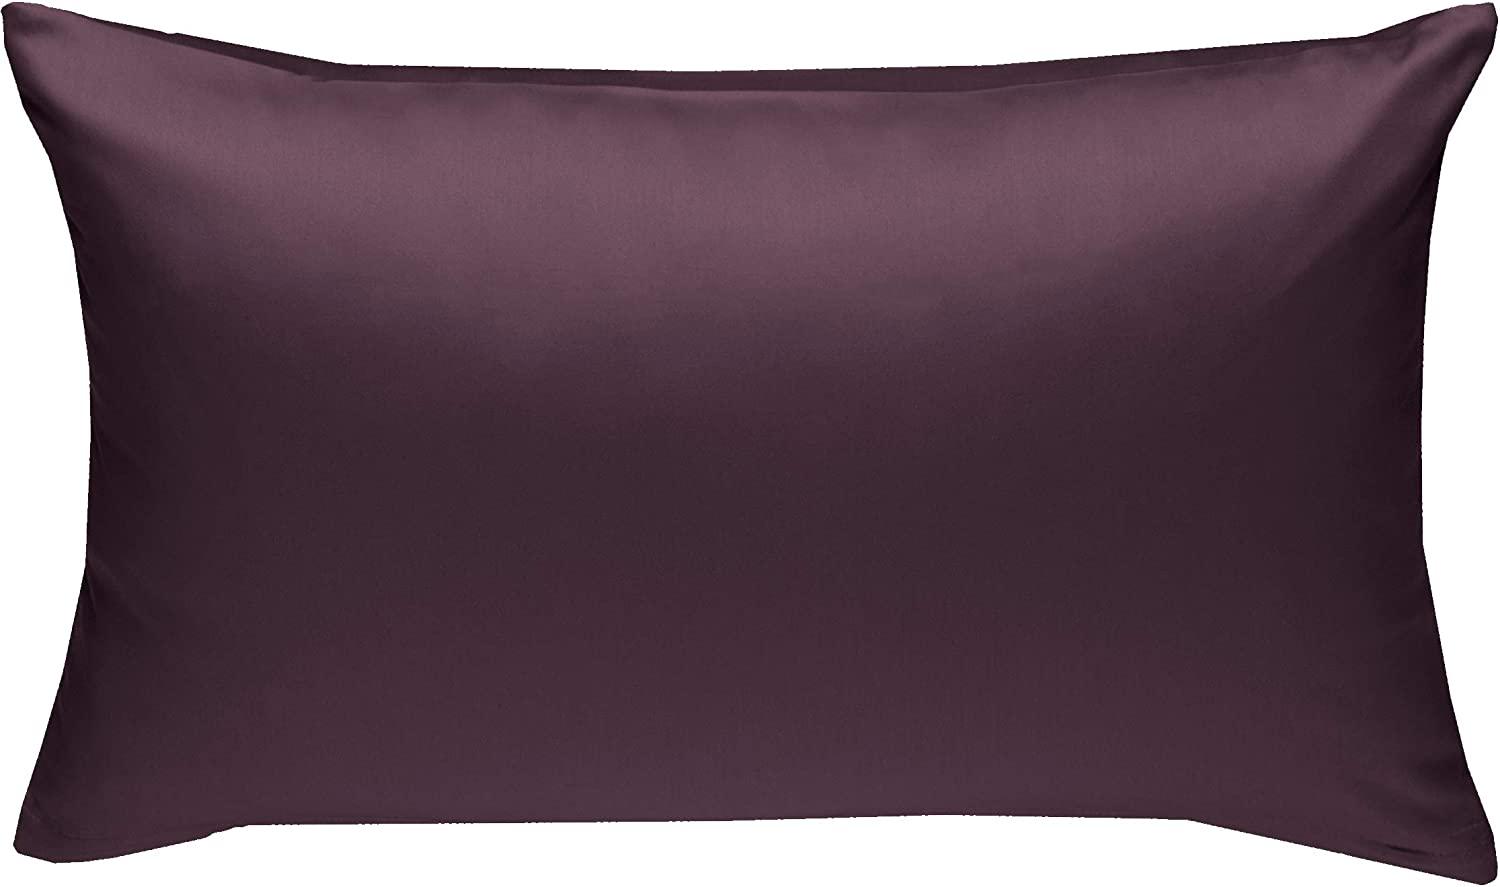 Bettwaesche-mit-Stil Mako-Satin / Baumwollsatin Bettwäsche uni / einfarbig brombeer Kissenbezug 60x80 cm Bild 1